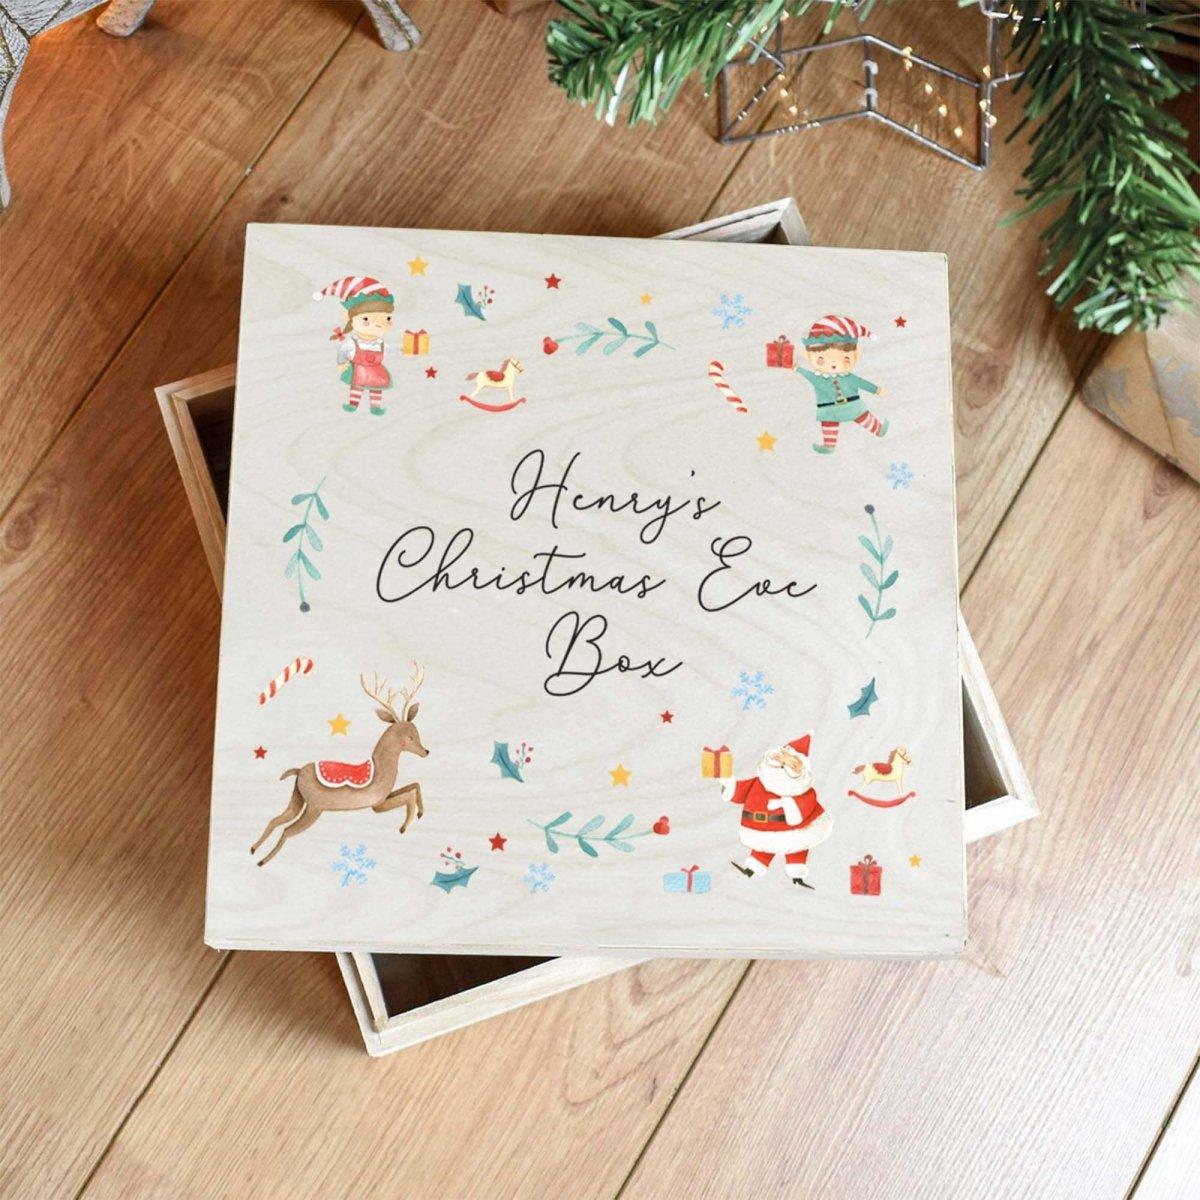 Personalised Christmas Eve Box, Child Xmas Eve Box, Engraved Christmas Eve Box, Xmas Crate, Engraved Boxes, Festive Box, Childs Box, Custom